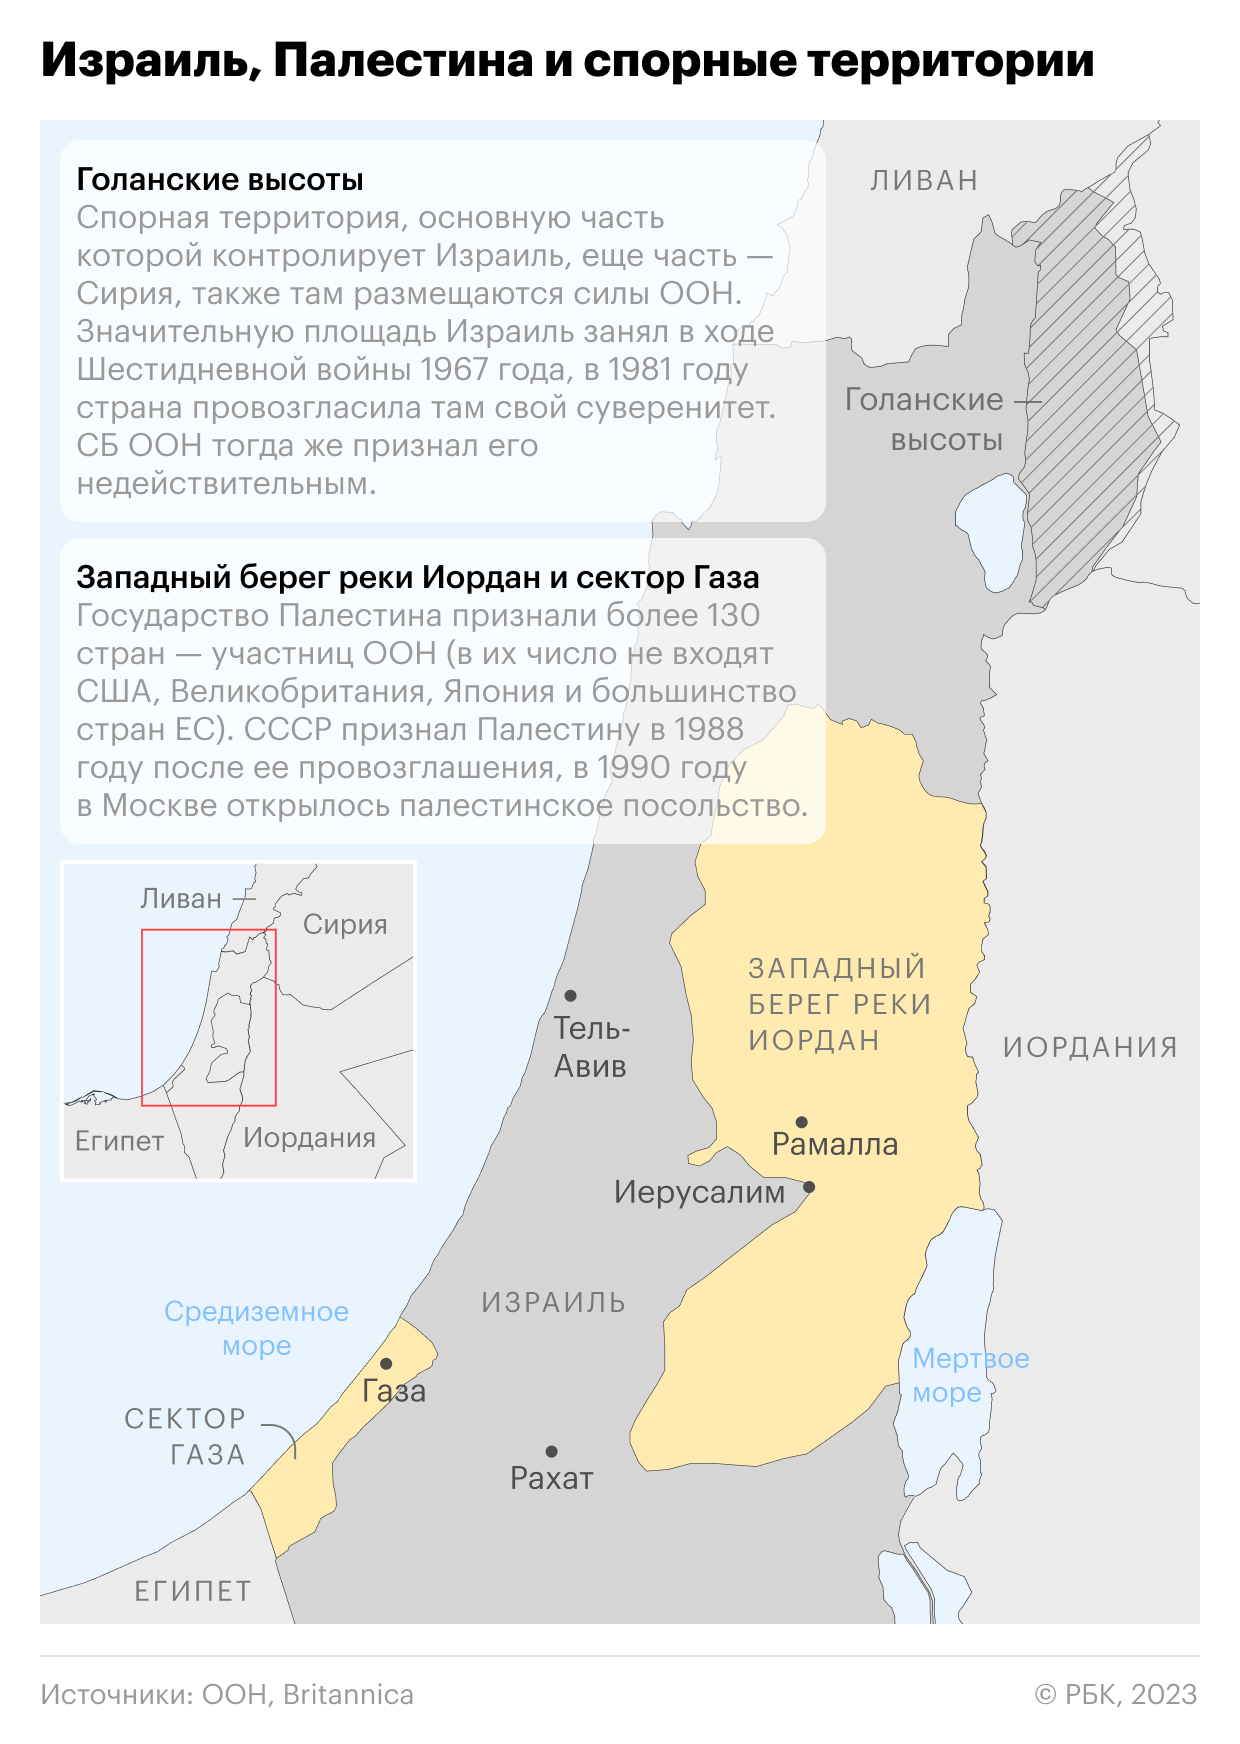 В Тель-Авиве прозвучали сигналы тревоги после запуска ракет из Газы